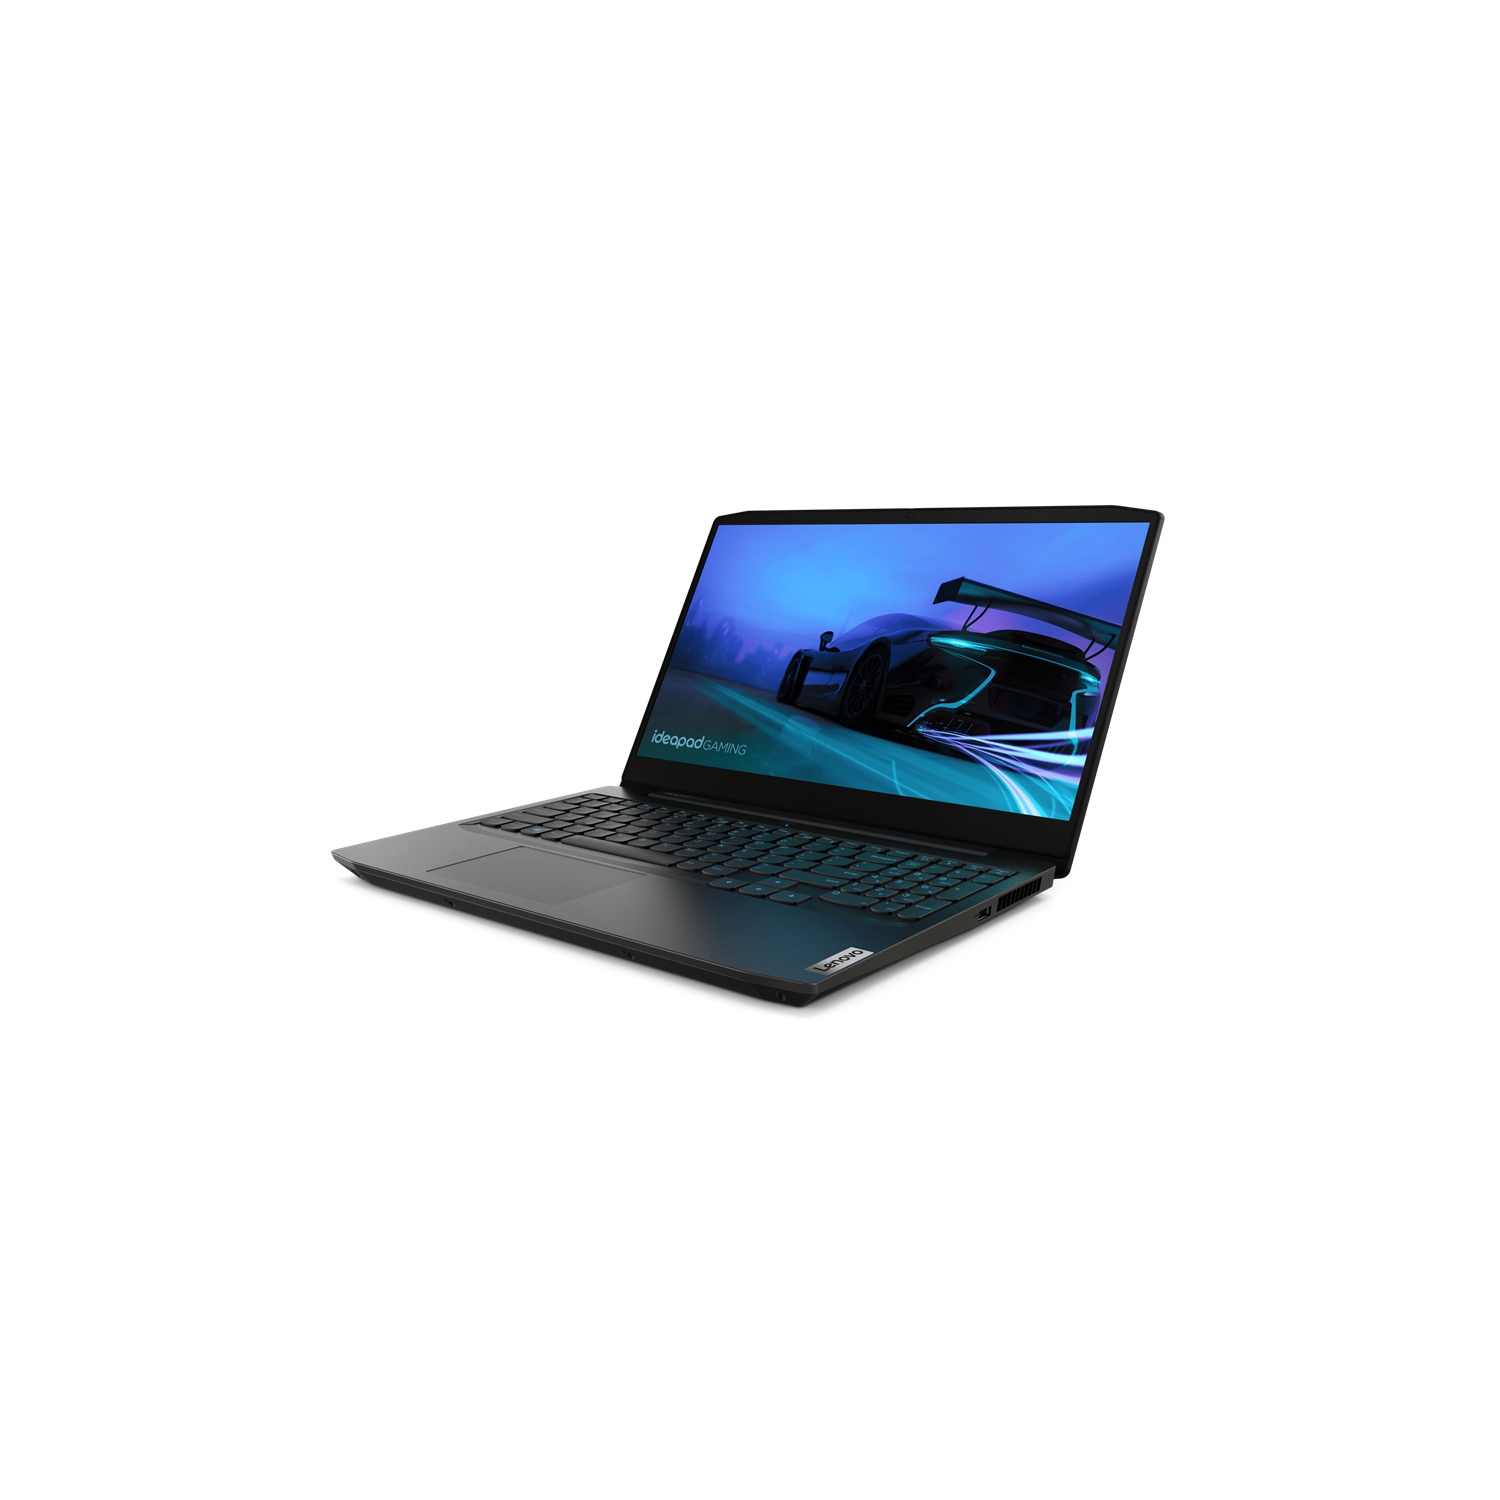 Lenovo Ideapad Gaming 15.6" Laptop (Intel Core i5-10300H, 8GB RAM, 256GB SSD + 1TB HDD, Windows 10, NVIDIA GeForce GTX 1650) - 81Y4001WUS